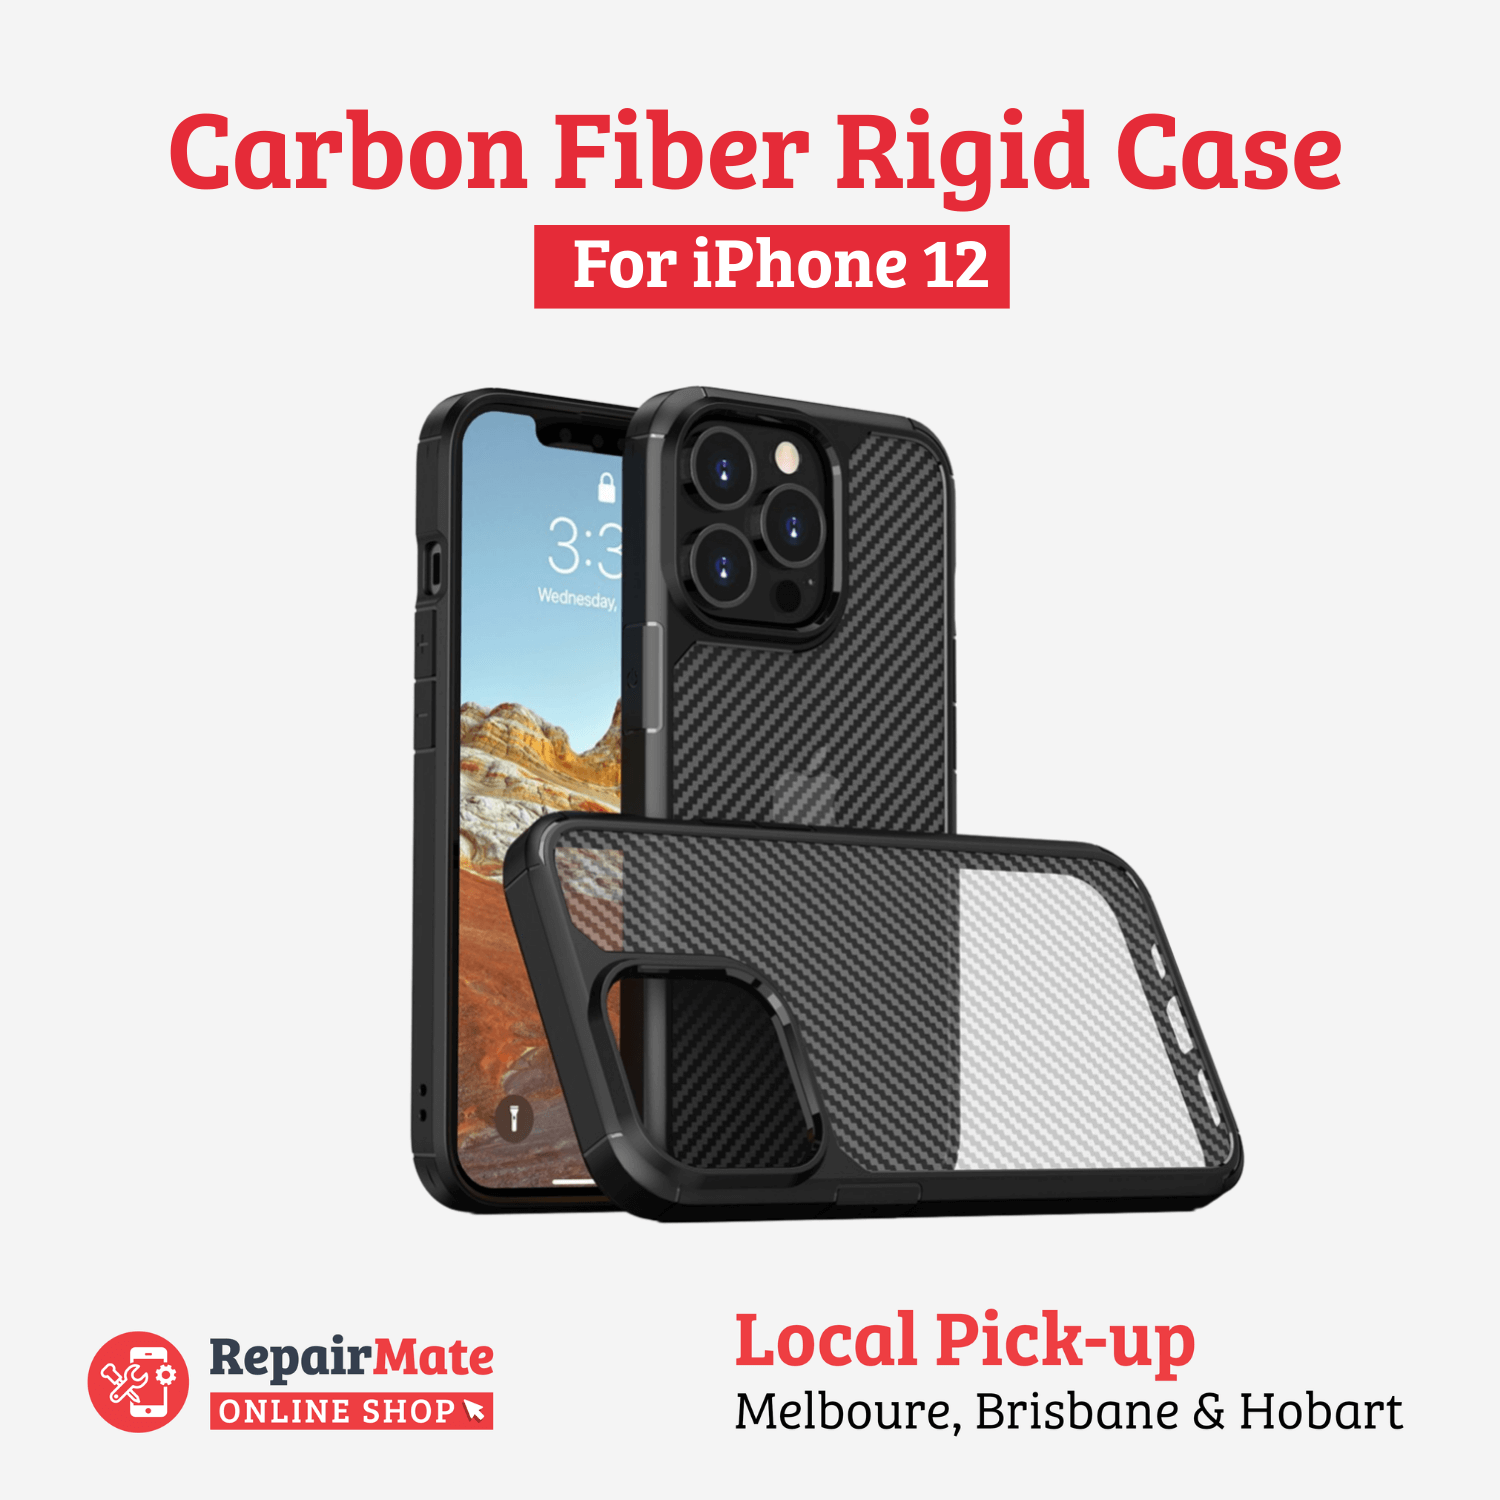 iPhone 12 Carbon Fiber Rigid Case Cover